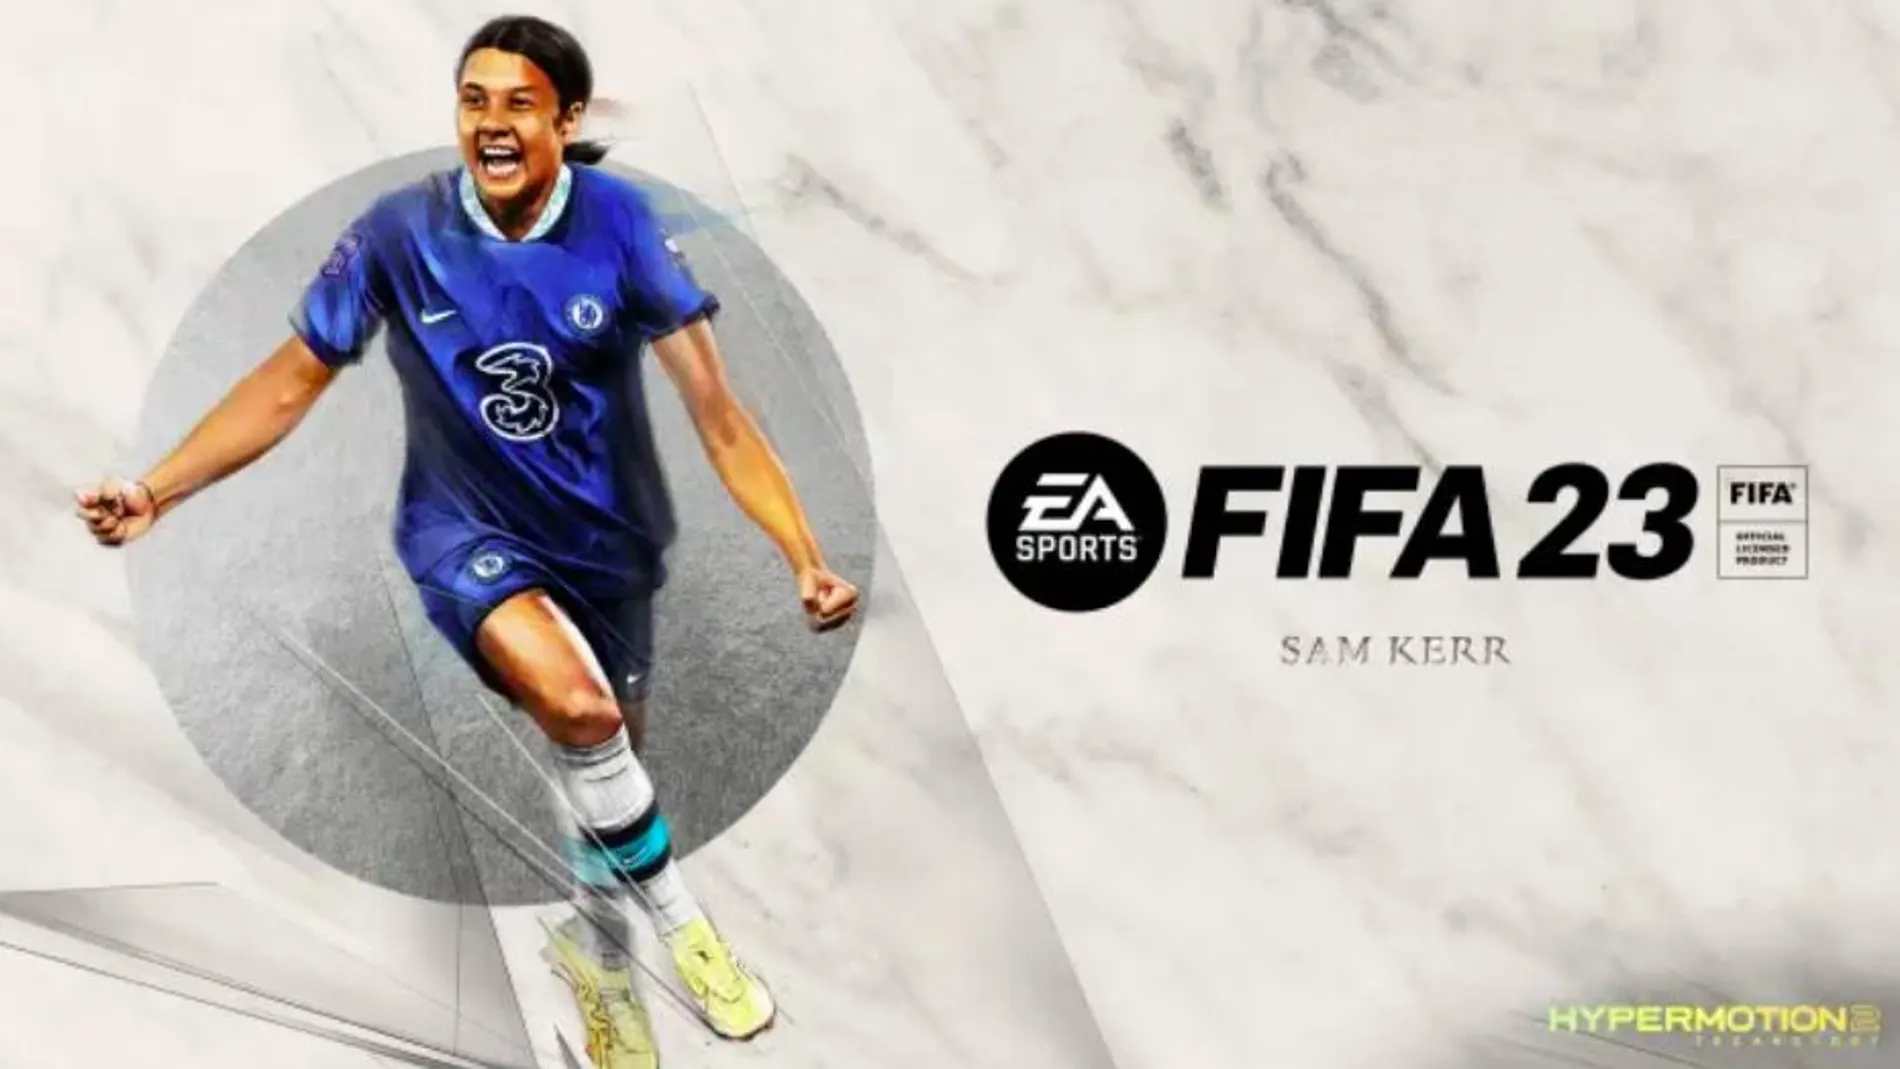 La estrella del equipo femenino del Chelsea, Sam Kerr, es portada del FIFA 23